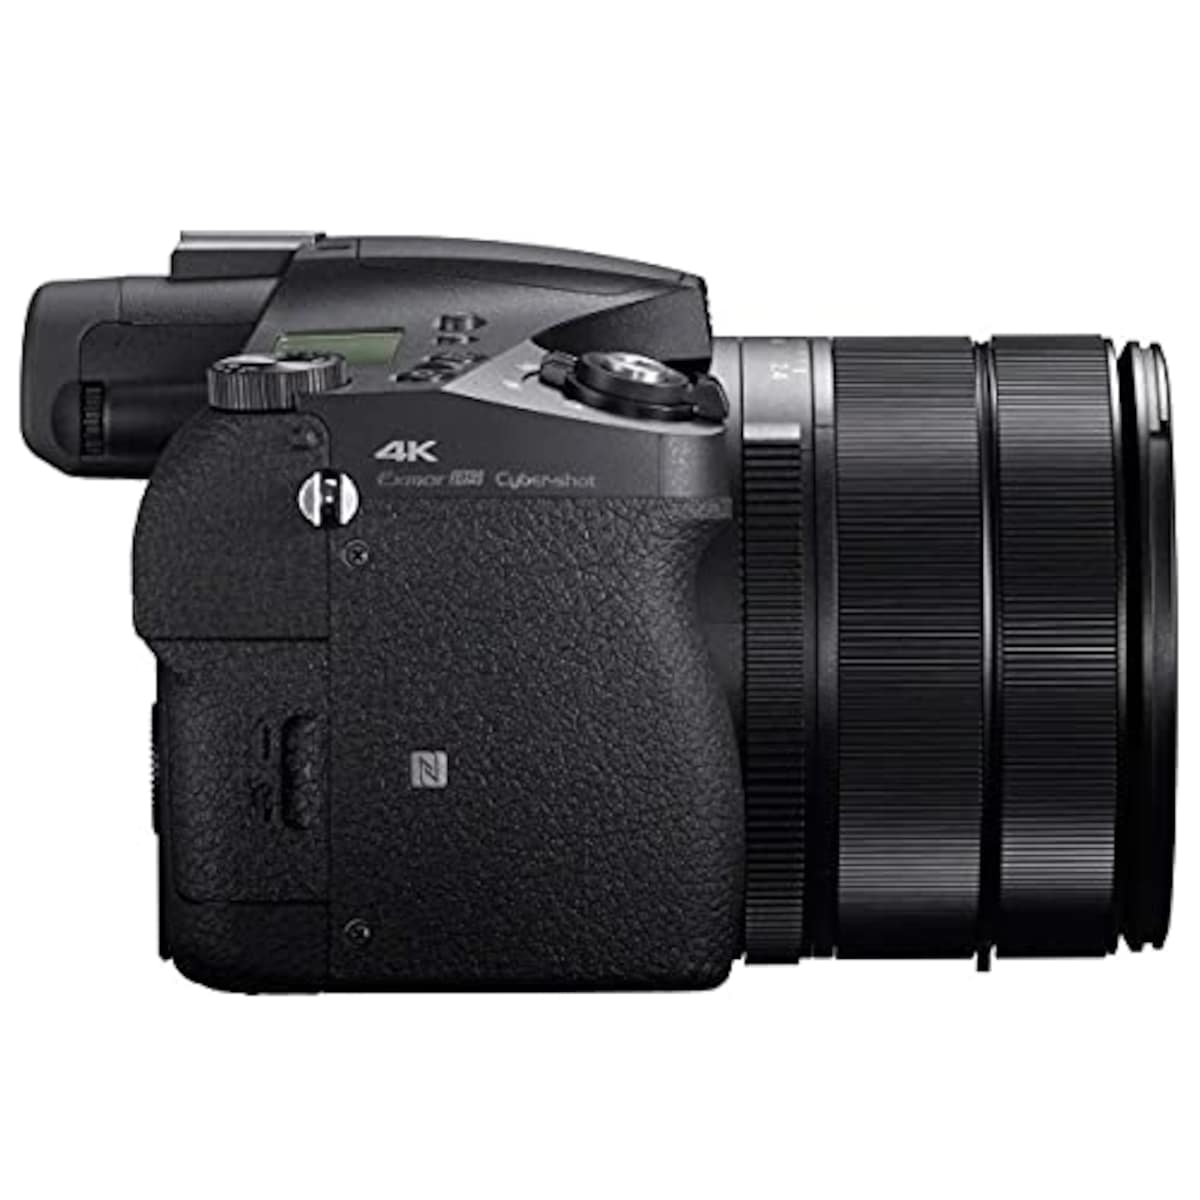  【RX10M4 と ジャケットケース セット】 大切なカメラをキズや汚れからガードしたい方に。DSC-RX10M4 + LCJ-RXJ画像9 